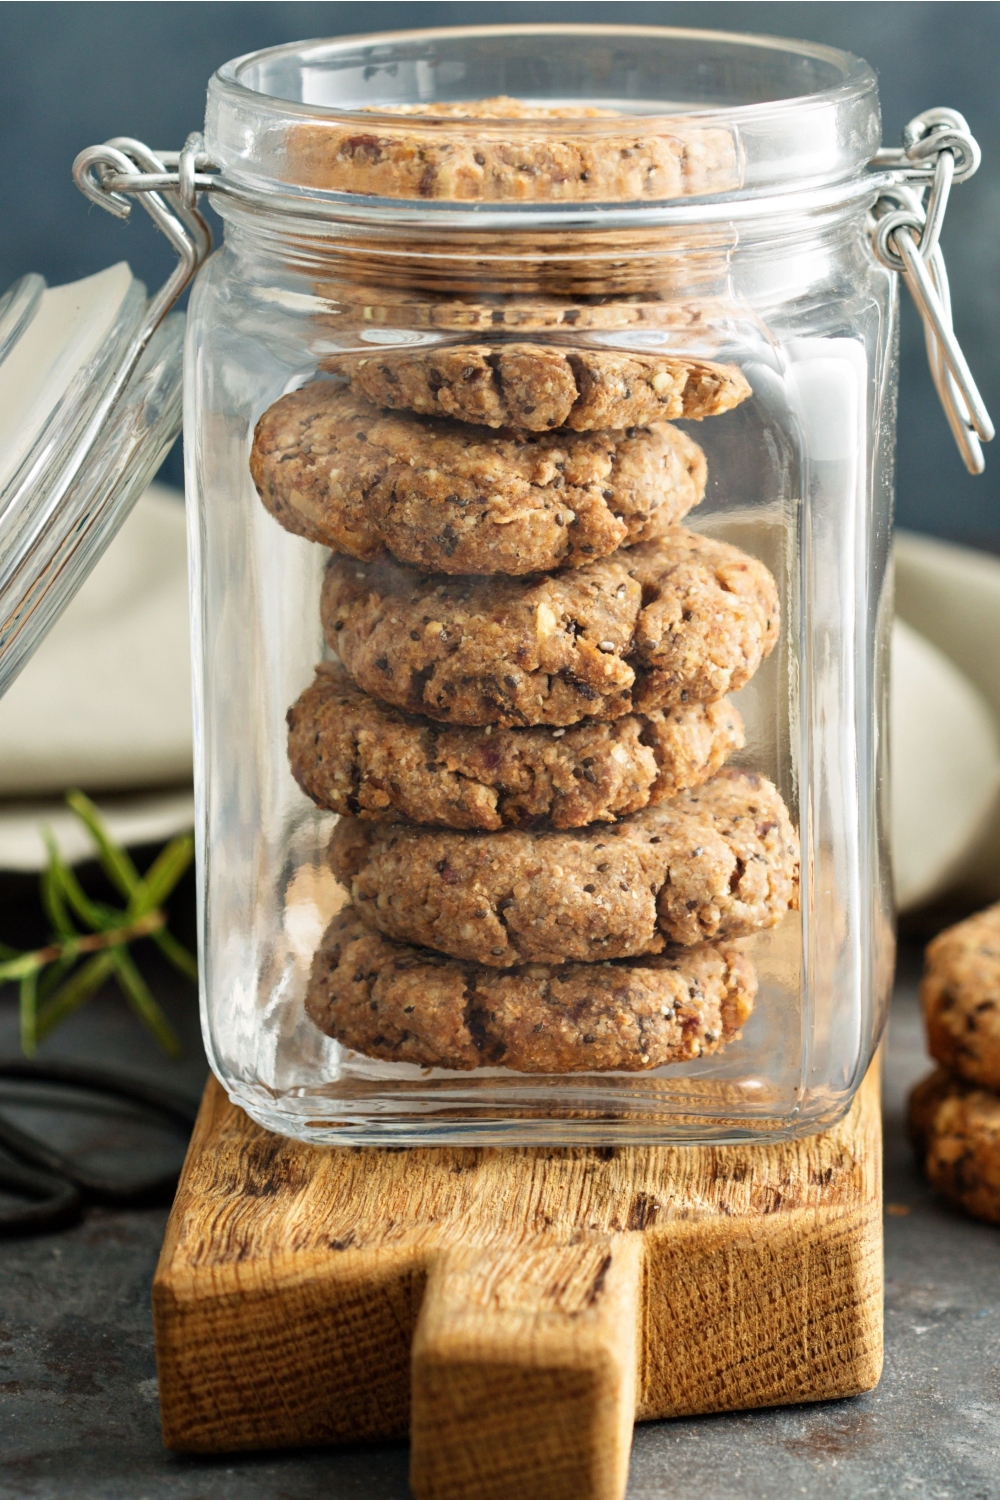 Crumbl cookie in a jar